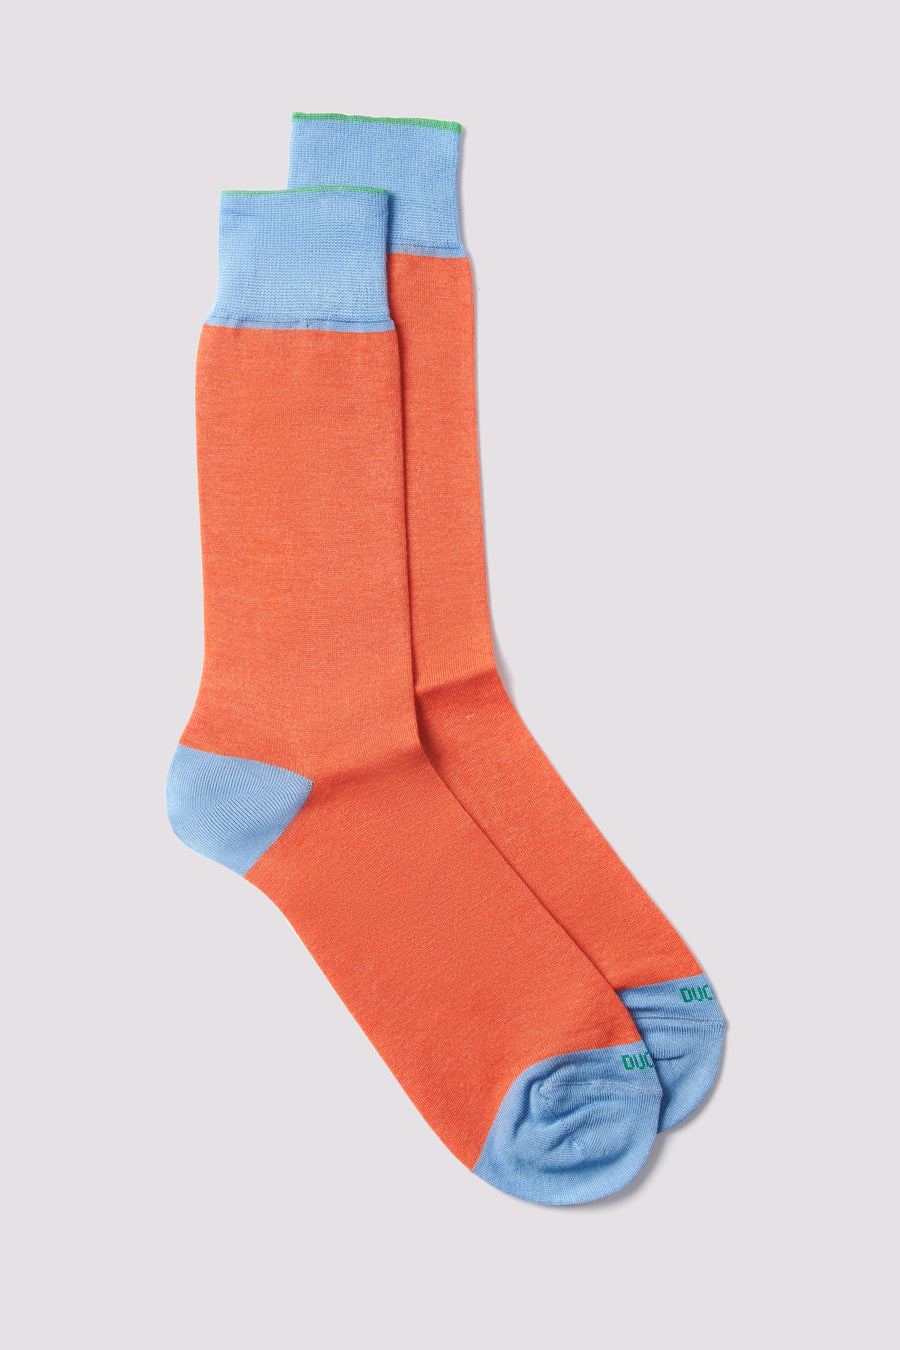 Heel Toe Socks in Bright Orange